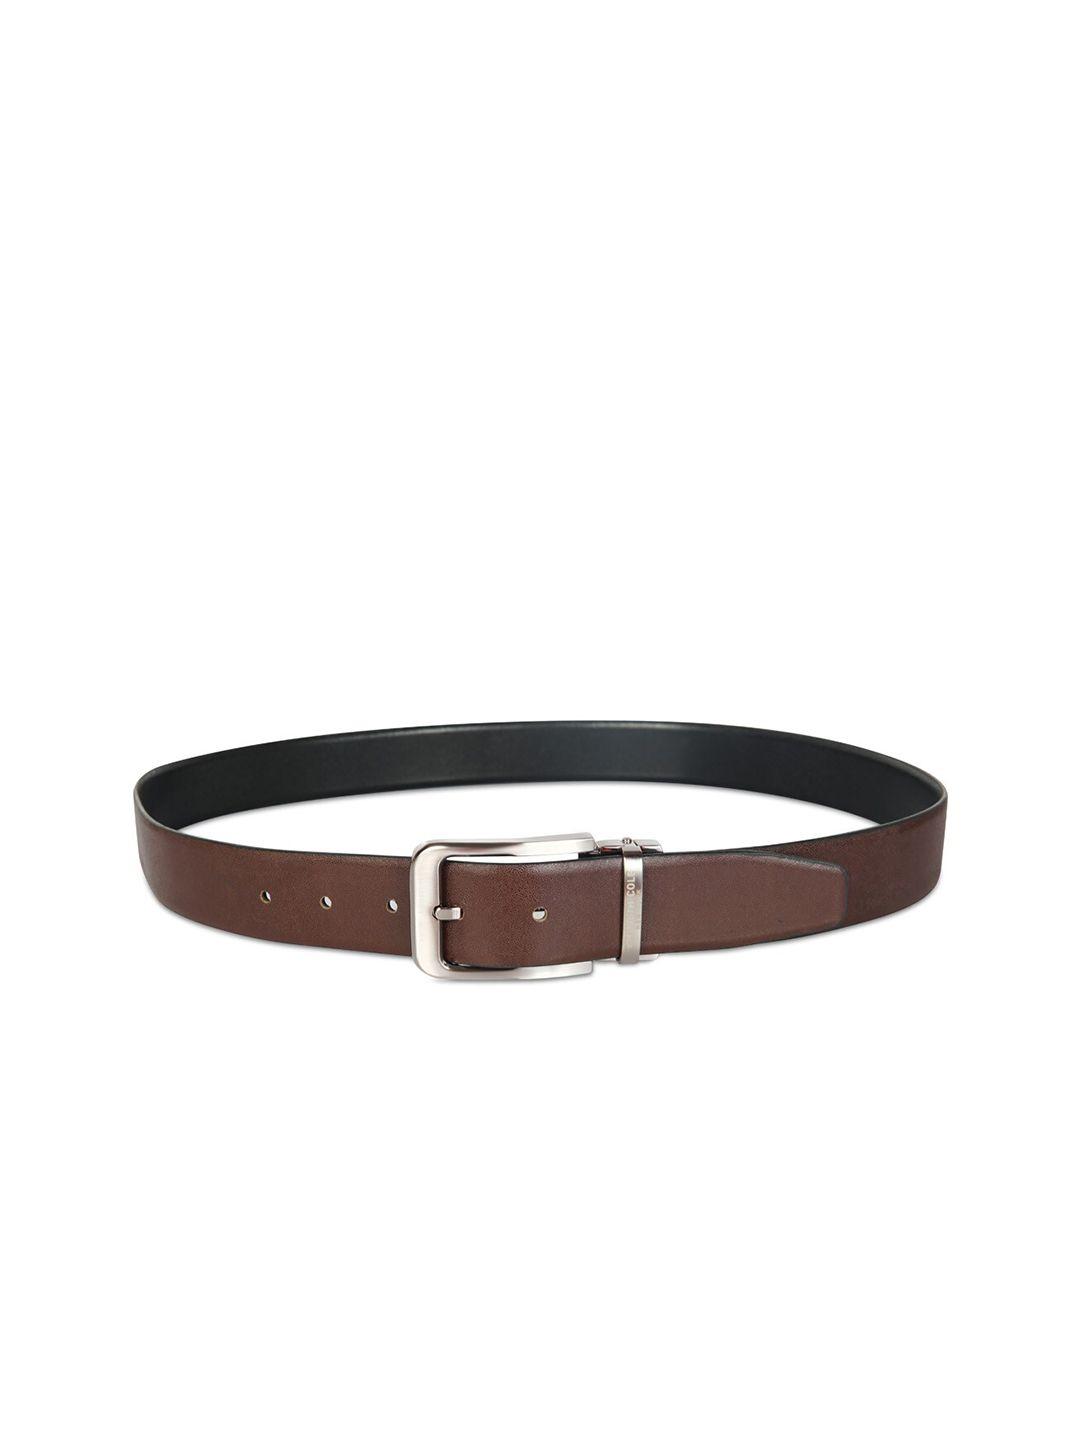 kenneth-cole-men-brown-leather-belt